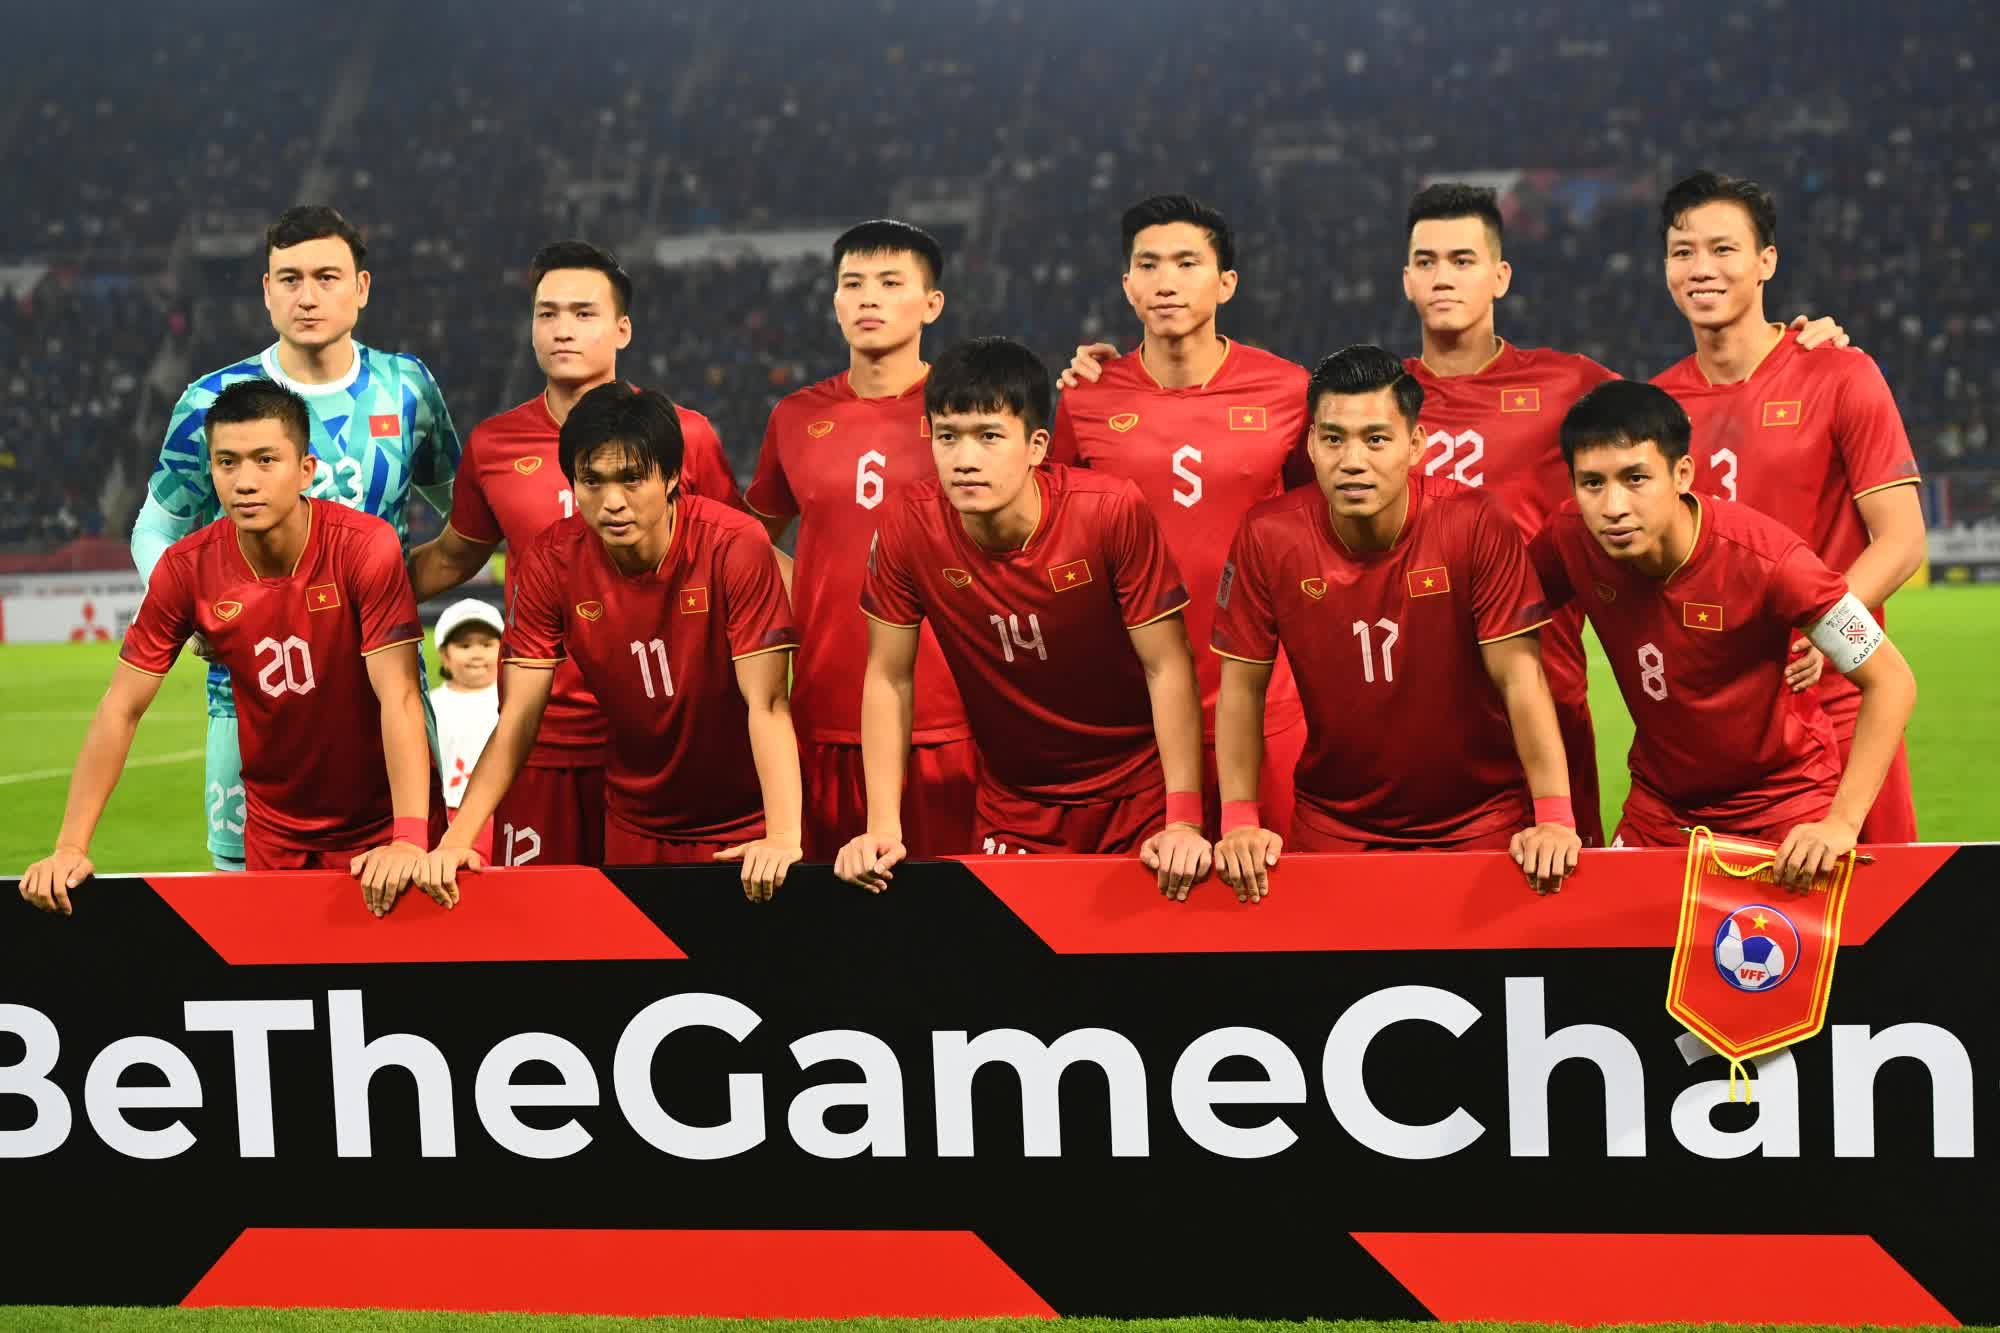 Khoảnh khắc đầy cảm xúc trong lễ chào cờ của ĐT Việt Nam trước chung kết AFF Cup 2022 - Ảnh 7.